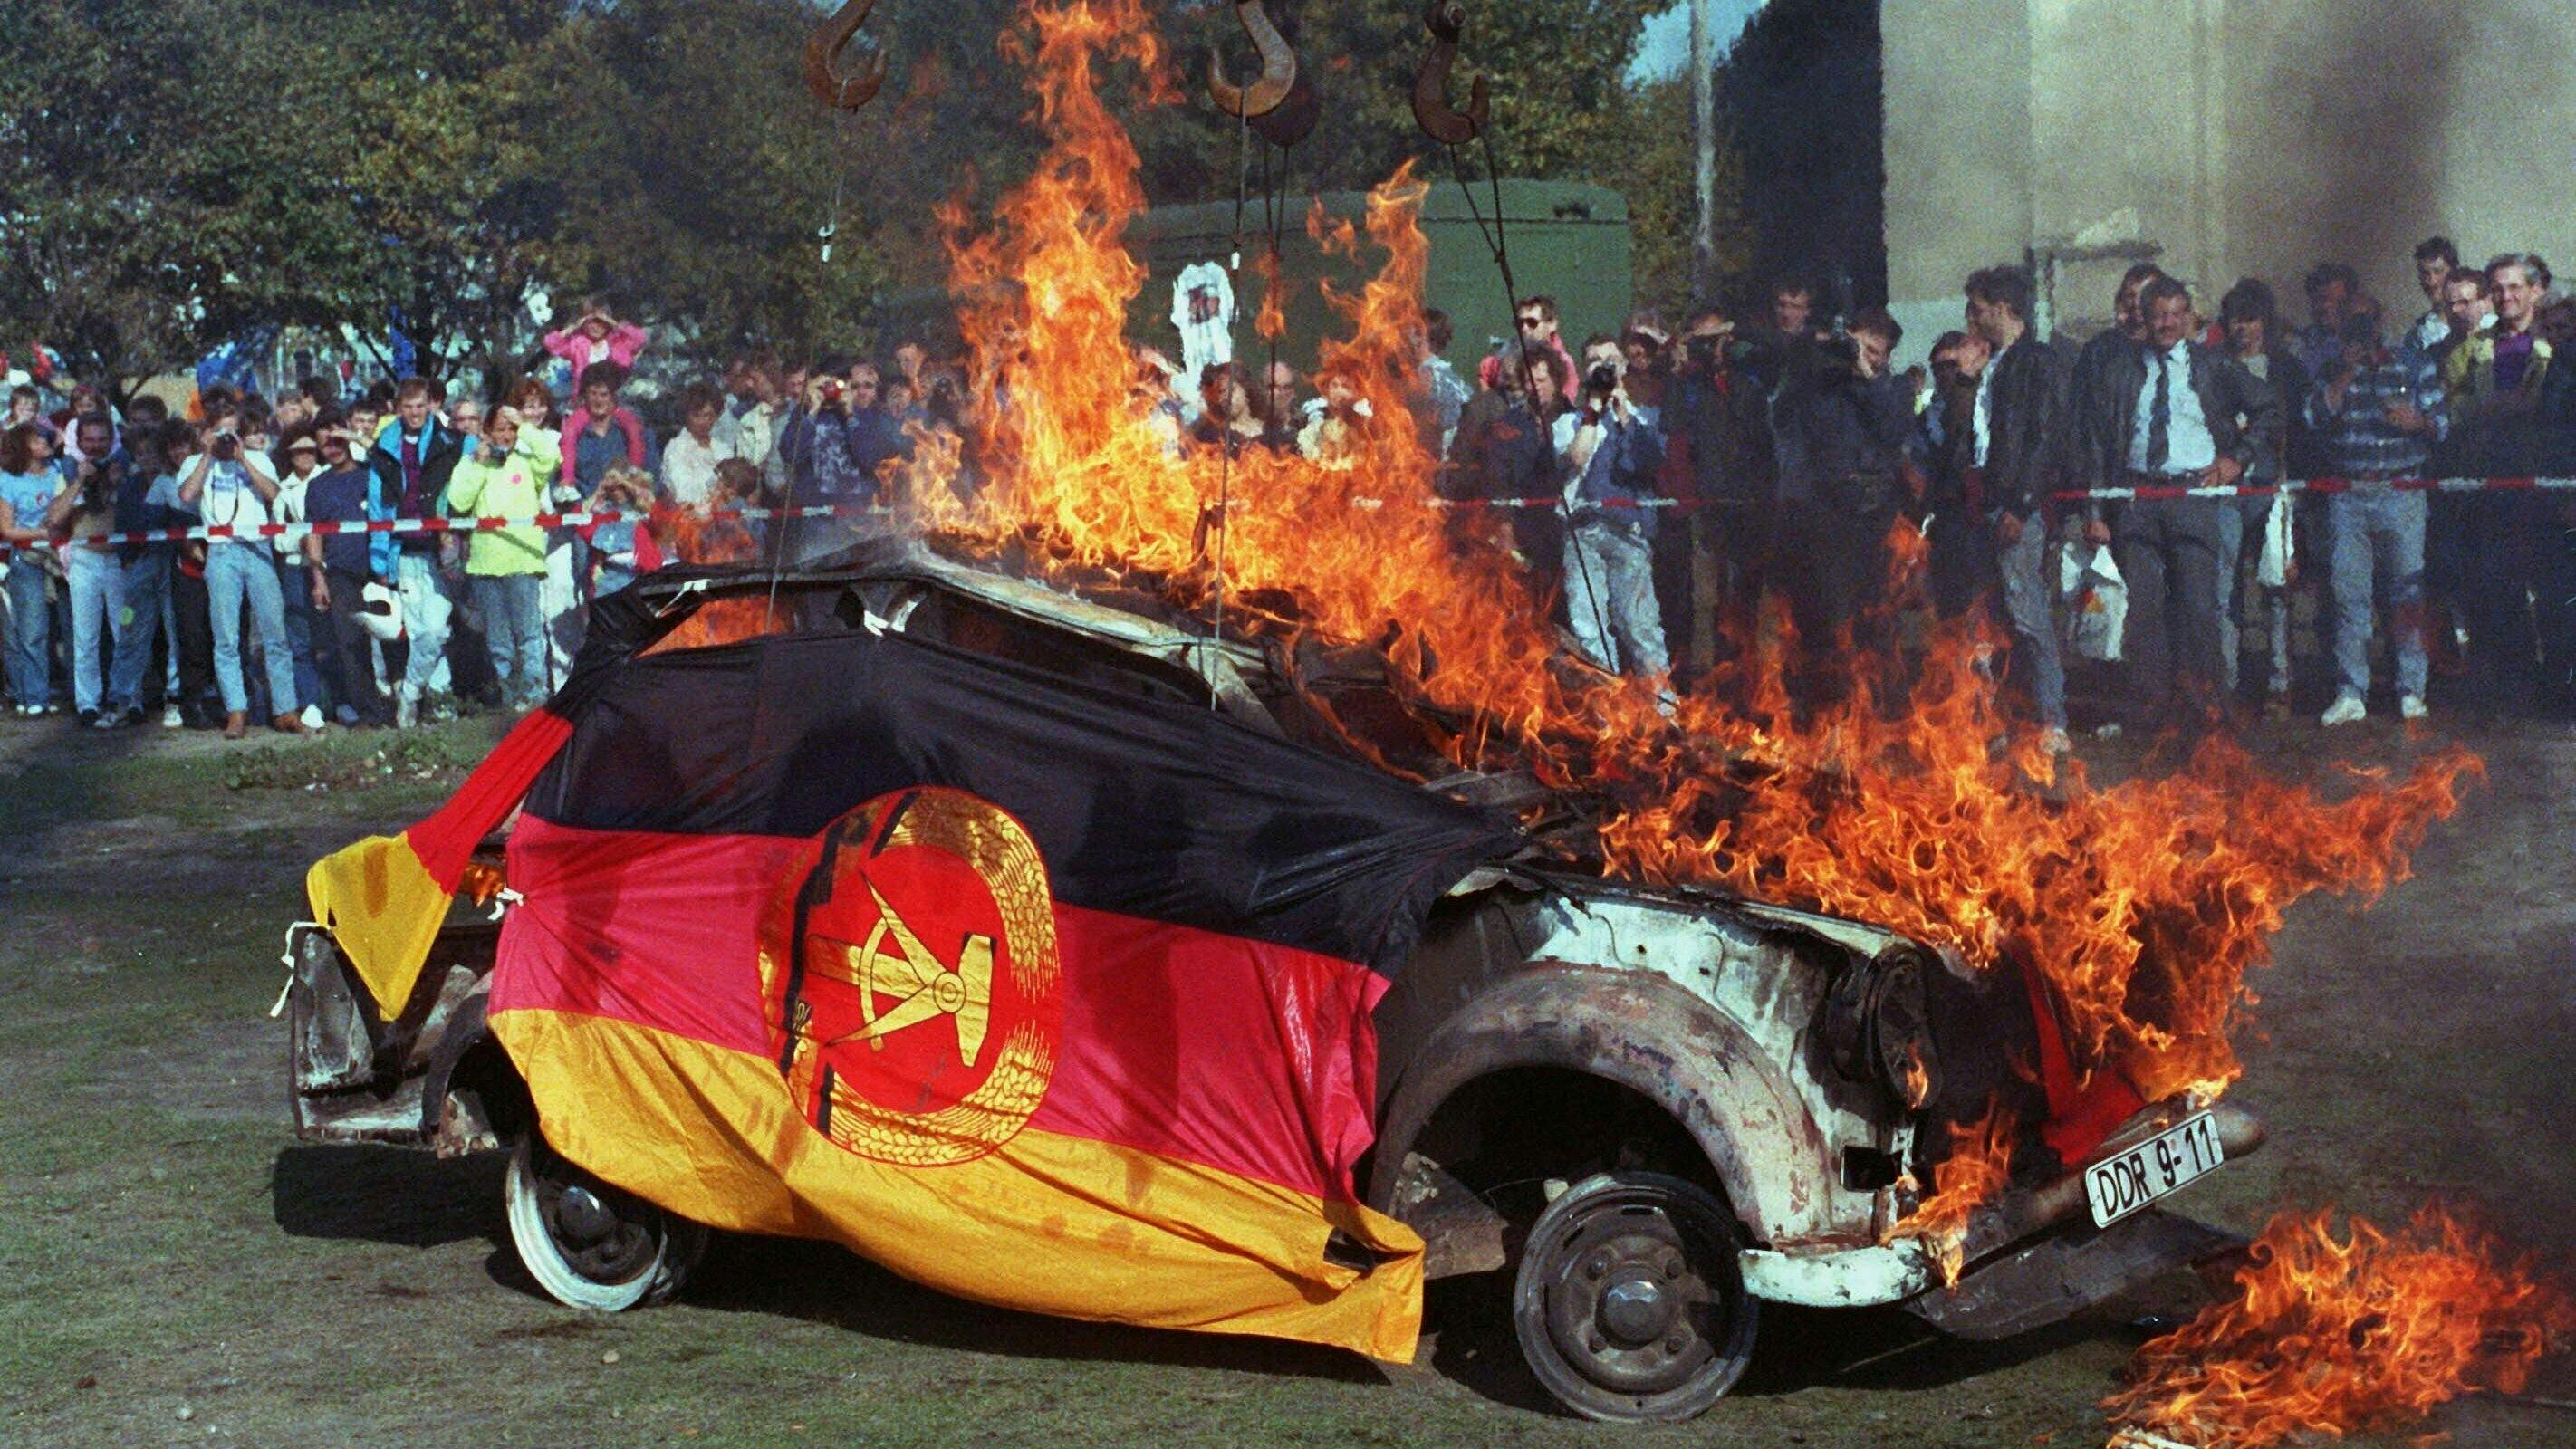 Ein brennender Trabi. Er ist in eine DDR-Fahne gehüllt.